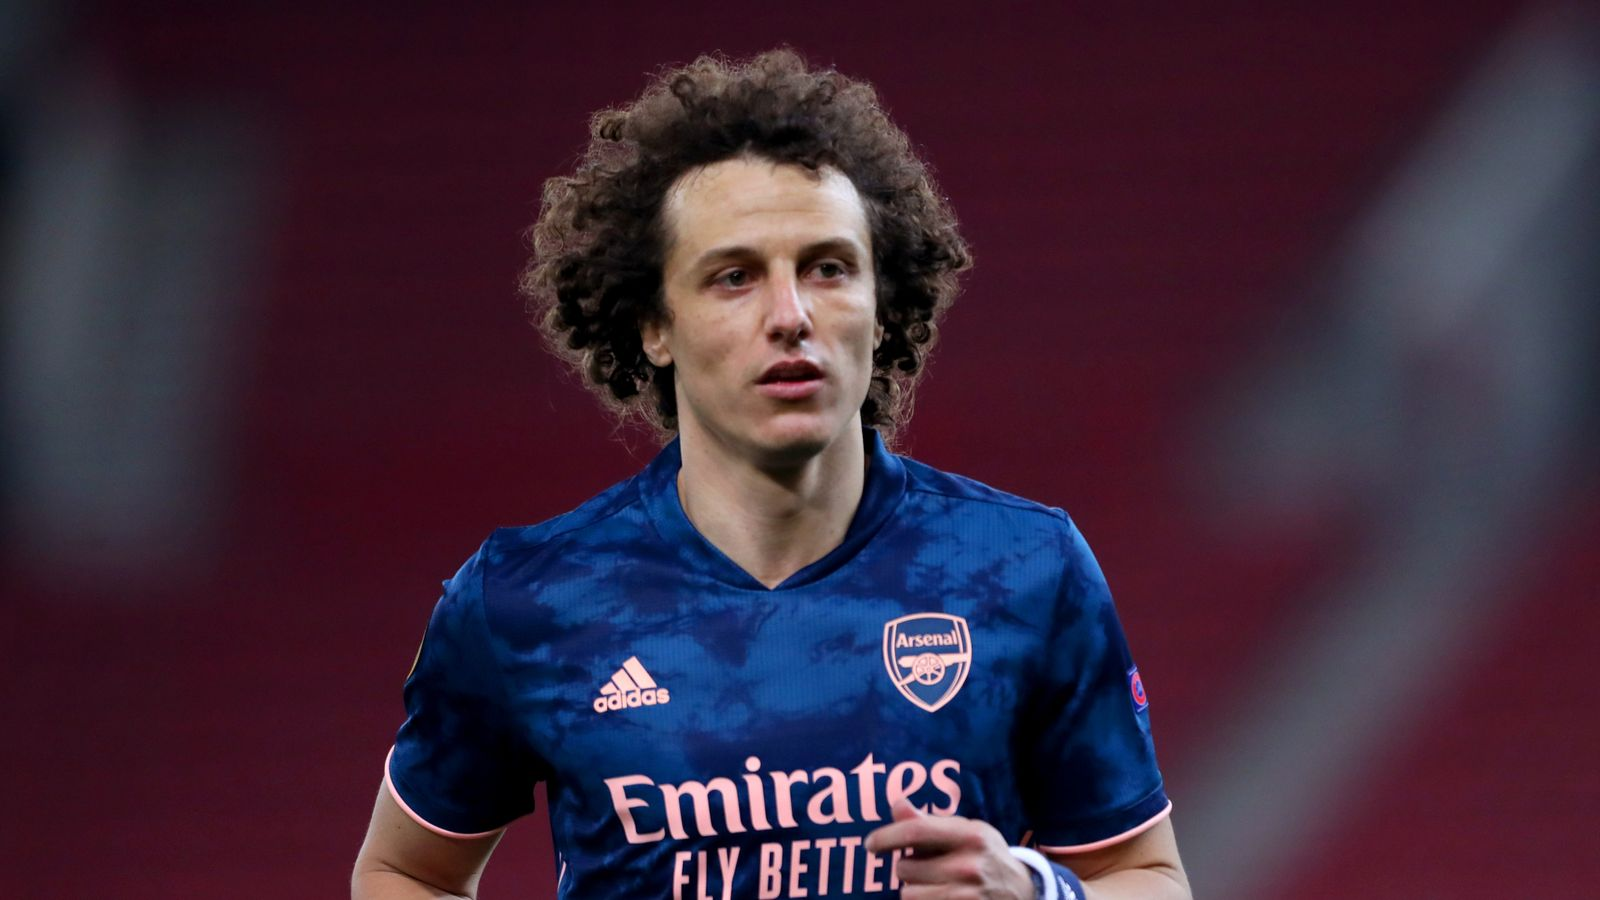 Kiểu tóc xoăn tít nổi bật của hậu vệ David Luiz